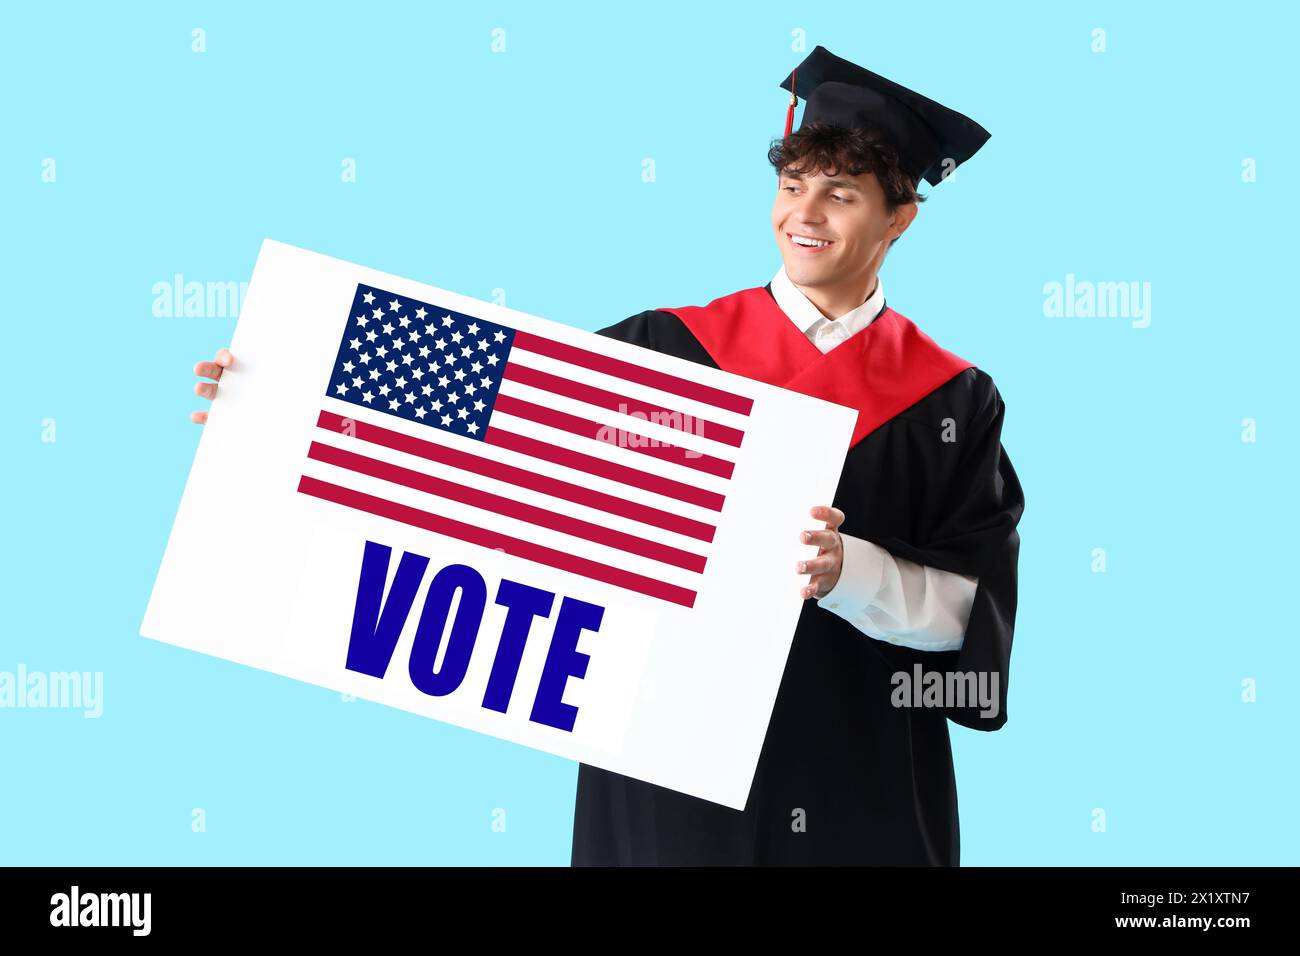 Étudiant diplômé masculin tenant une affiche avec VOTE DE mot et drapeau des États-Unis sur fond bleu clair Banque D'Images